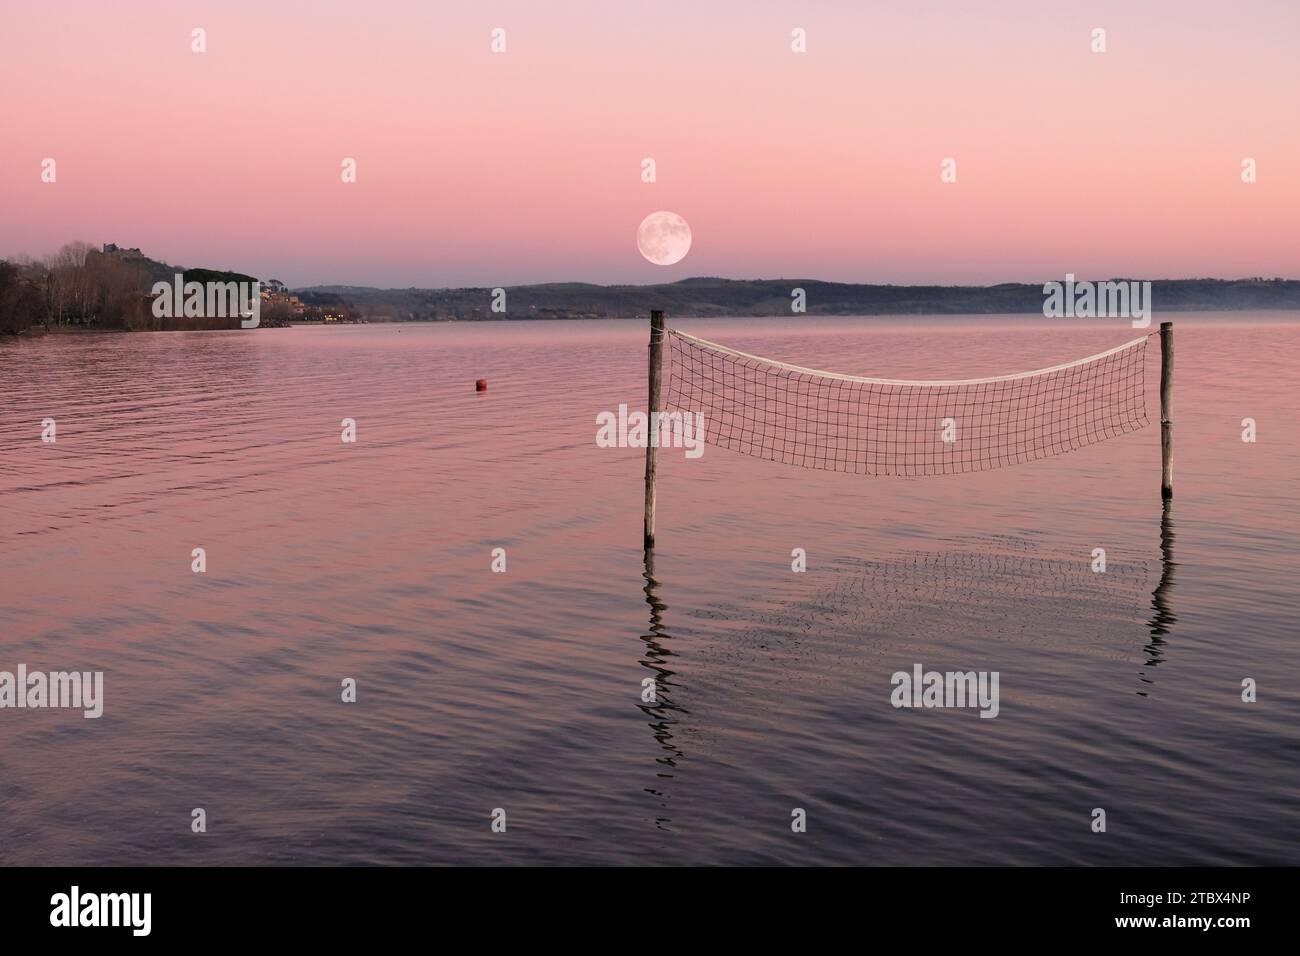 Filet de volley-ball debout dans l'eau du lac avec la pleine lune en arrière-plan Banque D'Images